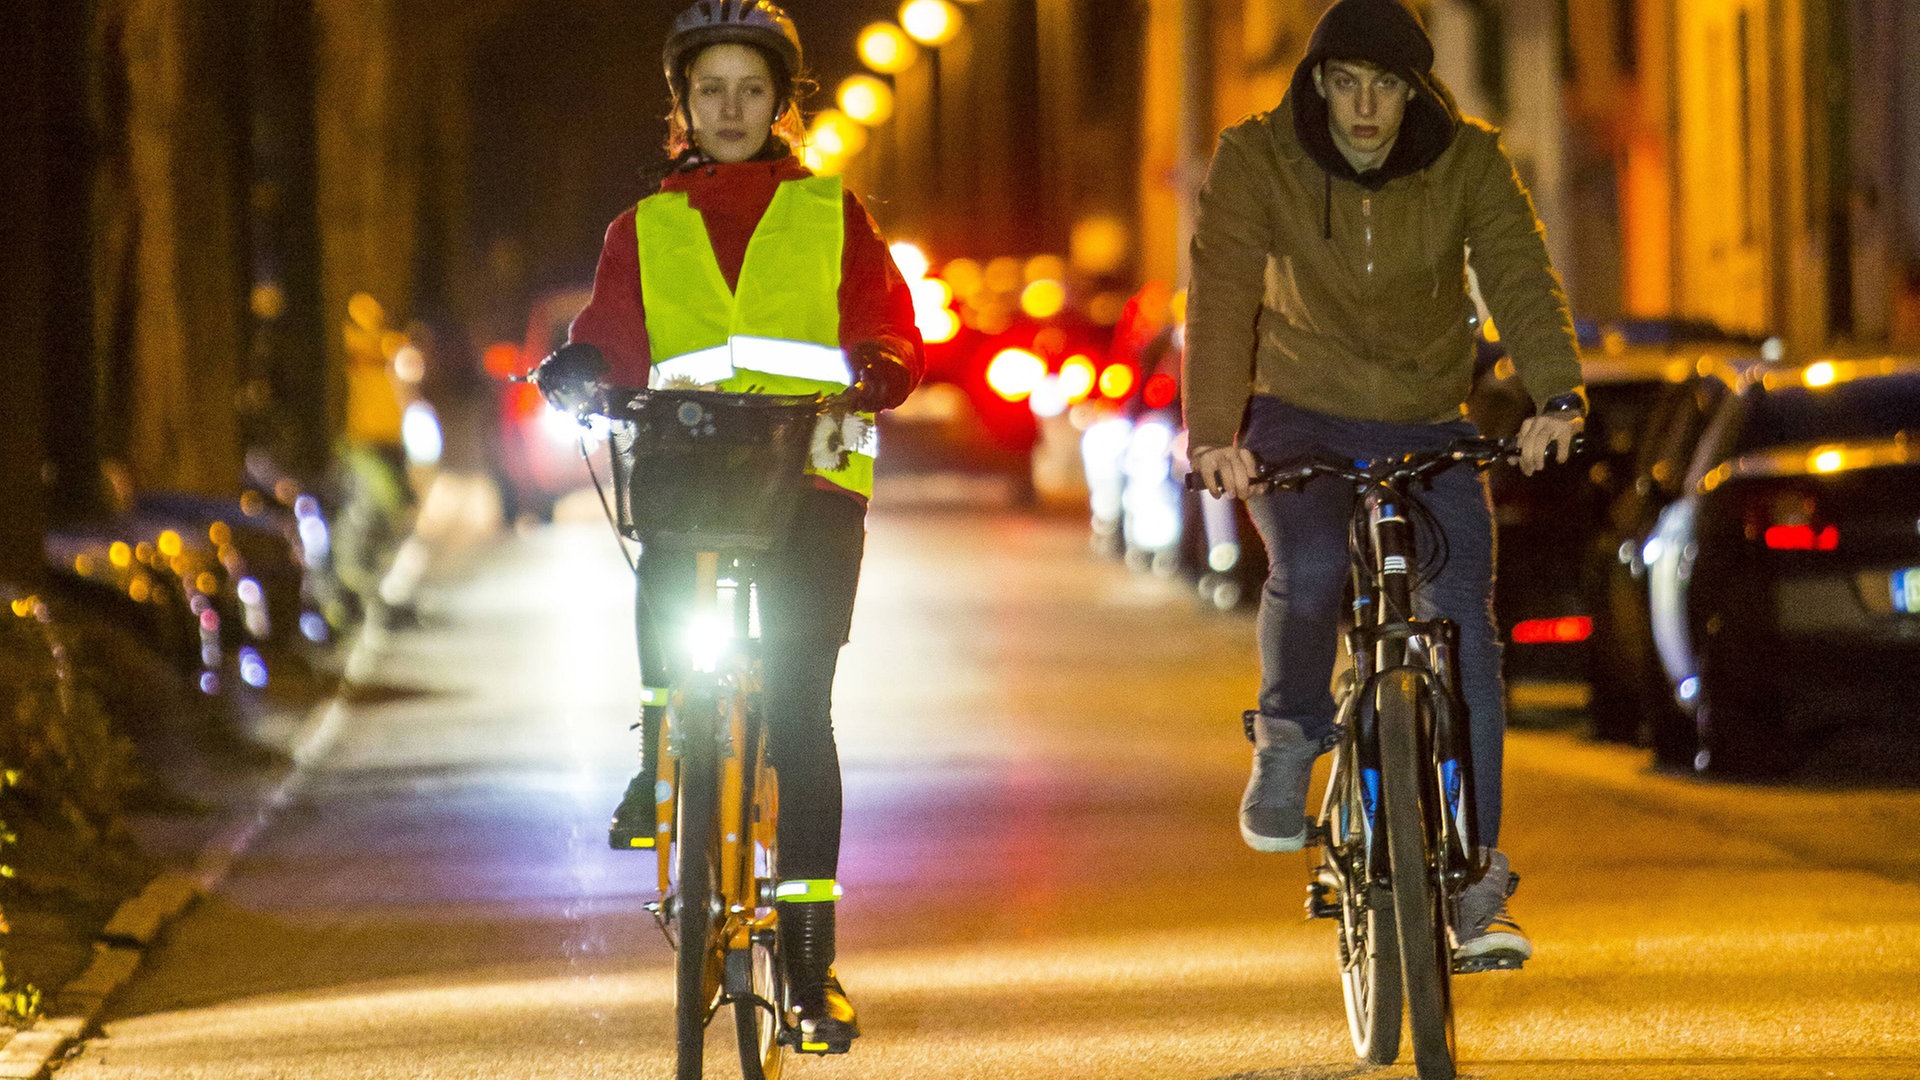 Fahrradlicht: Lohnt sich eine LED-Fahrradbeleuchtung?